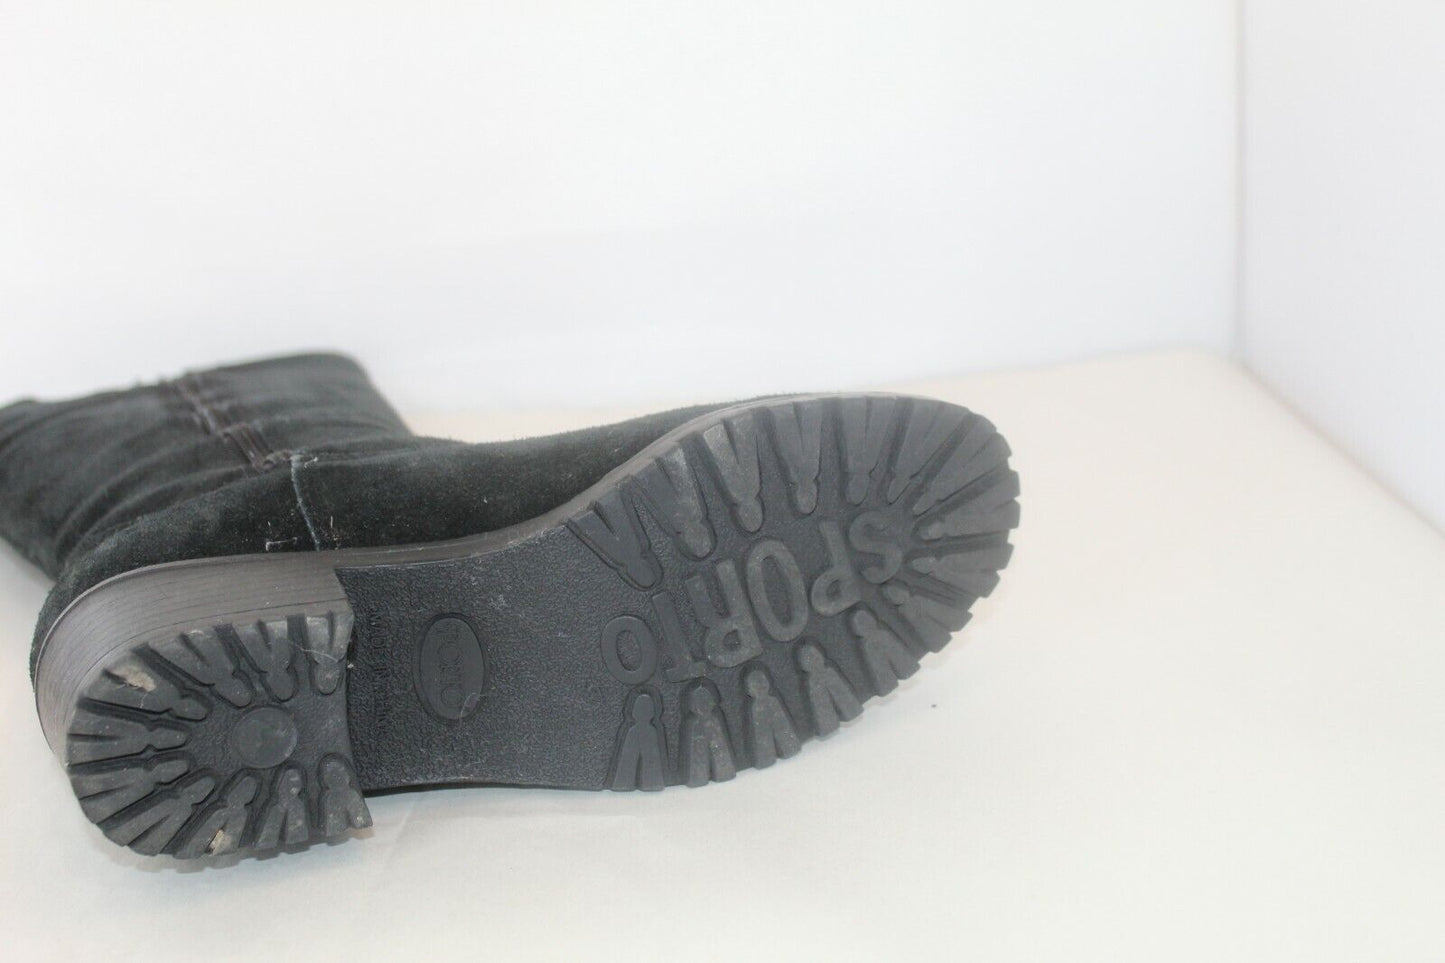 *NEW* Sporto Women's  Waterproof Side Zip Black Suede 15" Tall Boots Size 7M